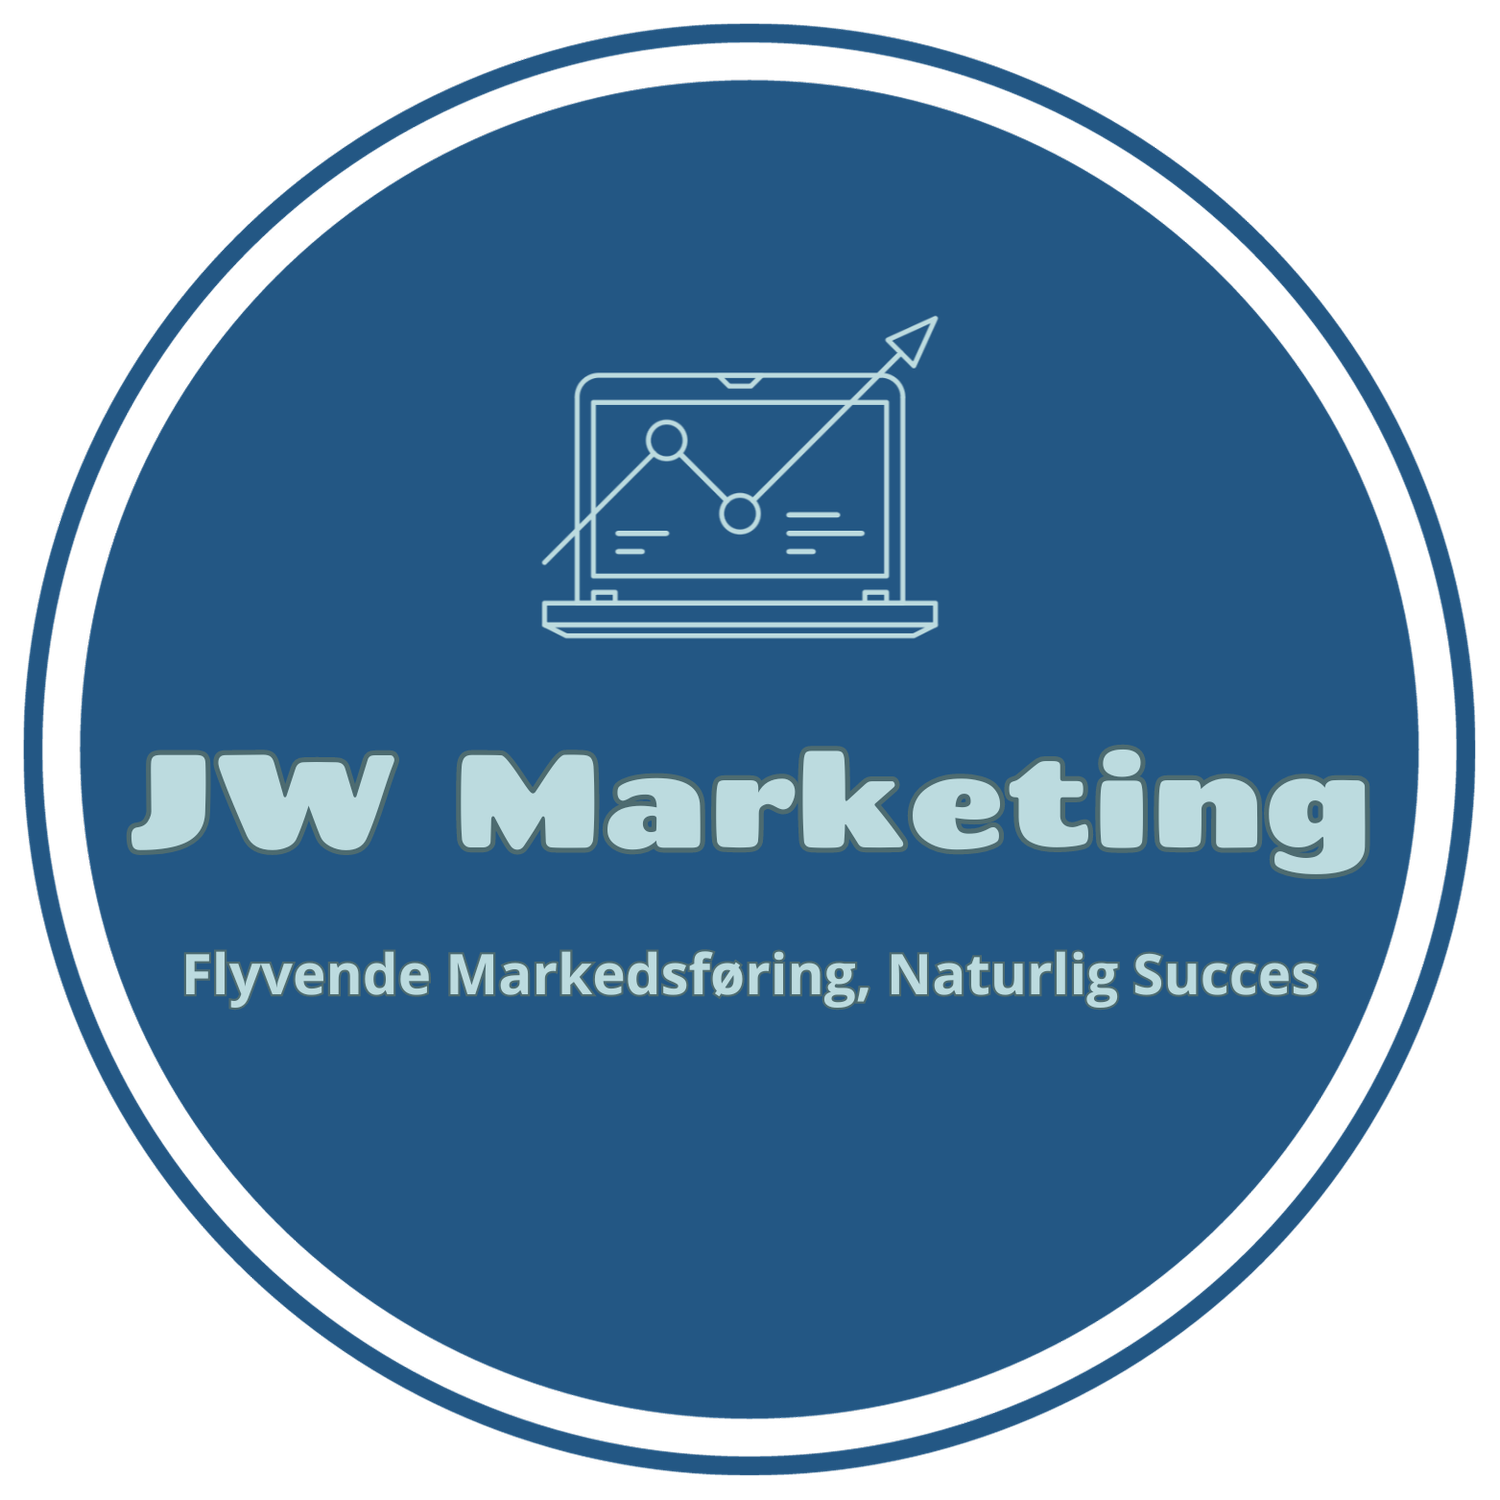 JW Marketing